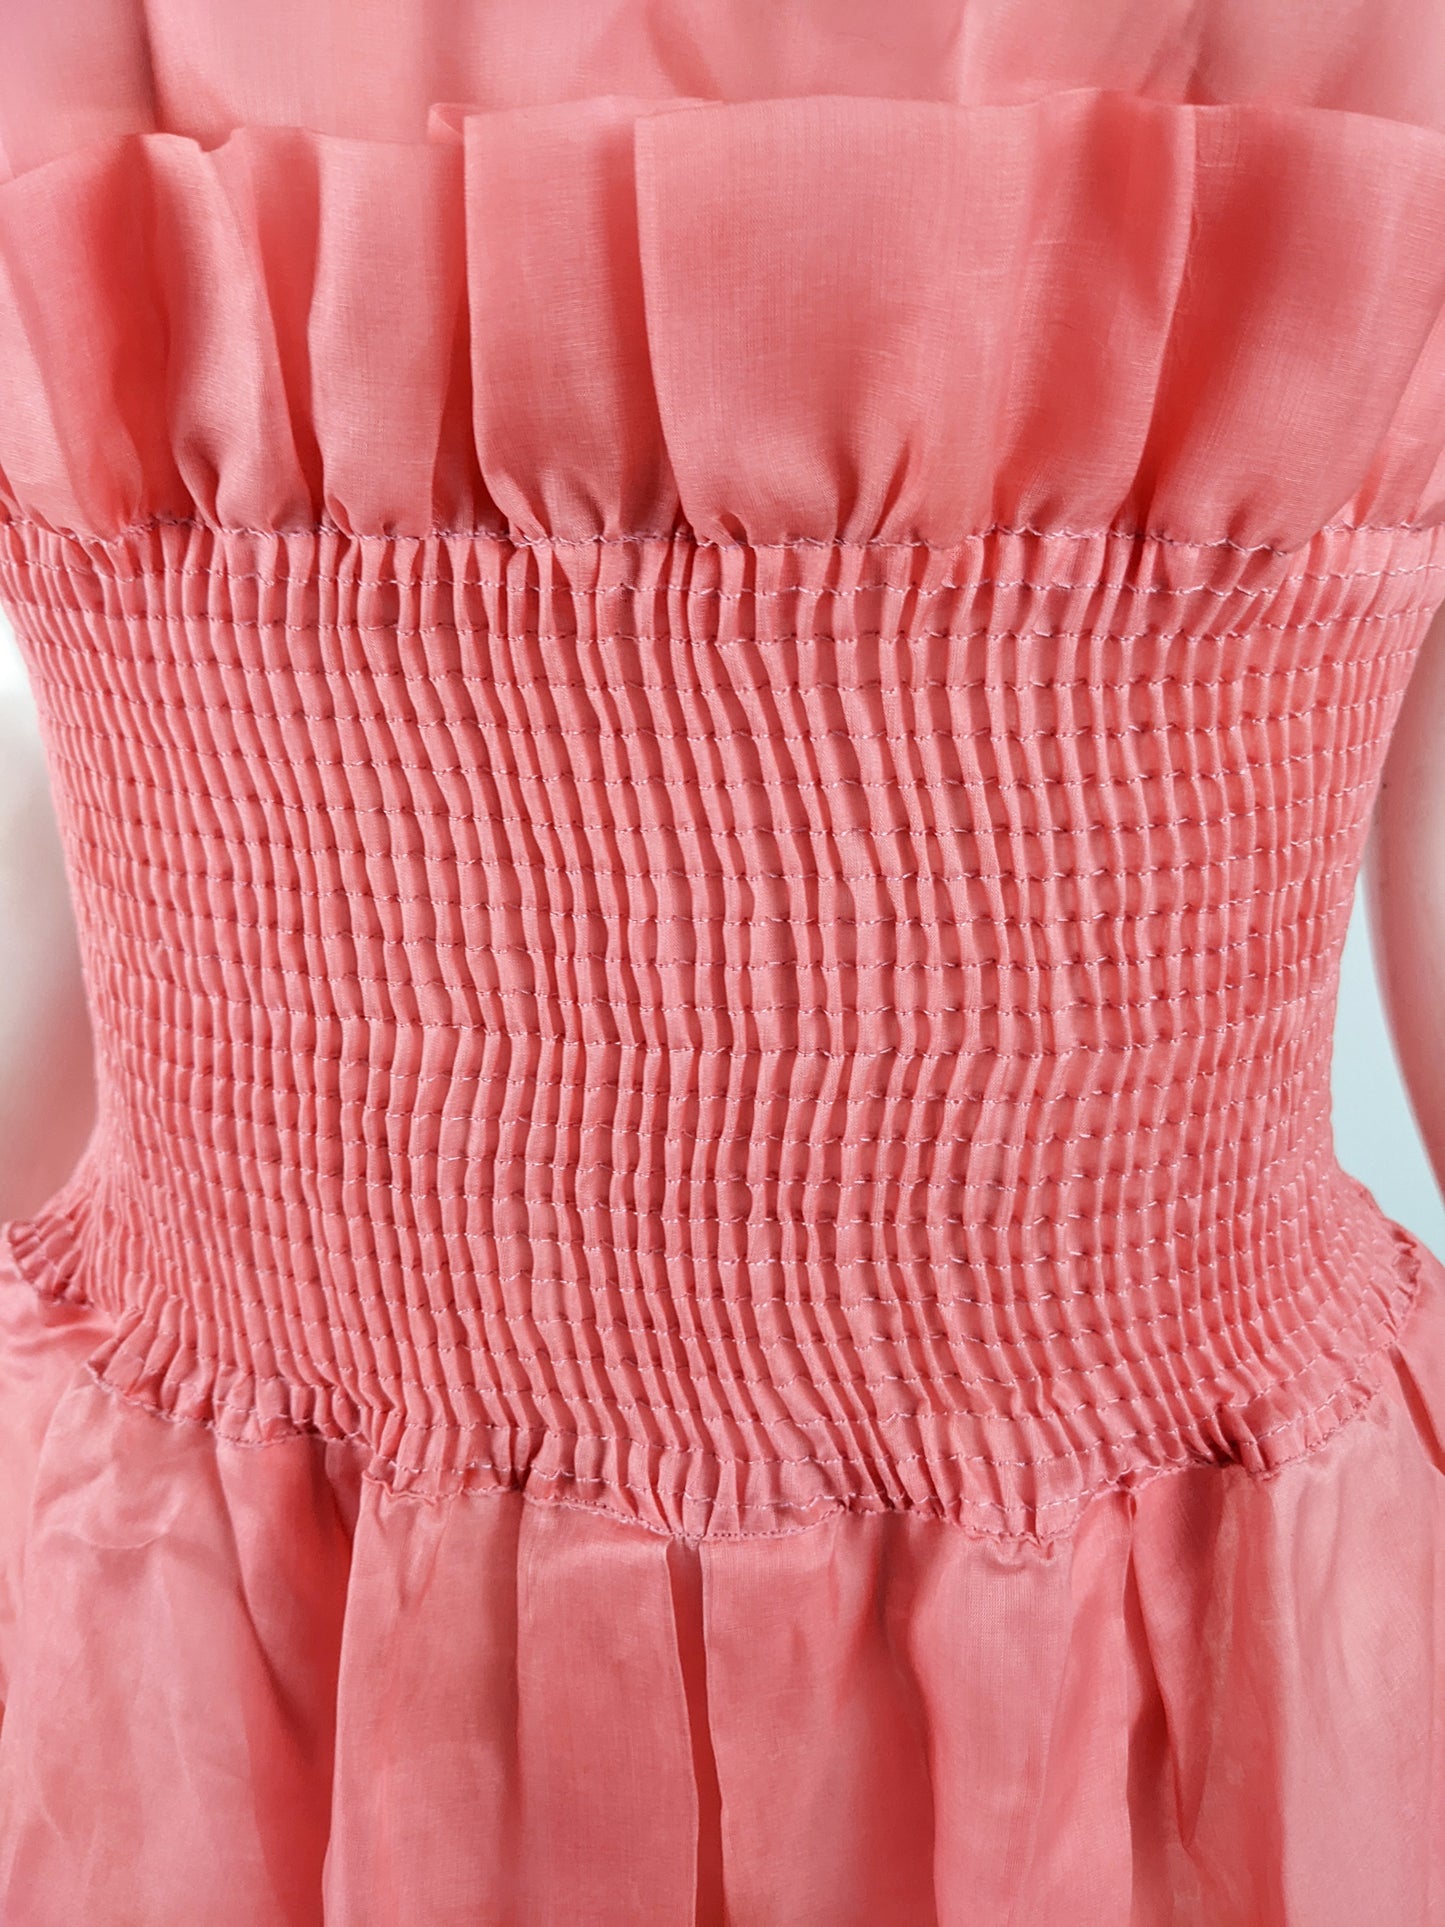 Emporio Armani Vintage Sheer Pink Organza Dress, 1980s